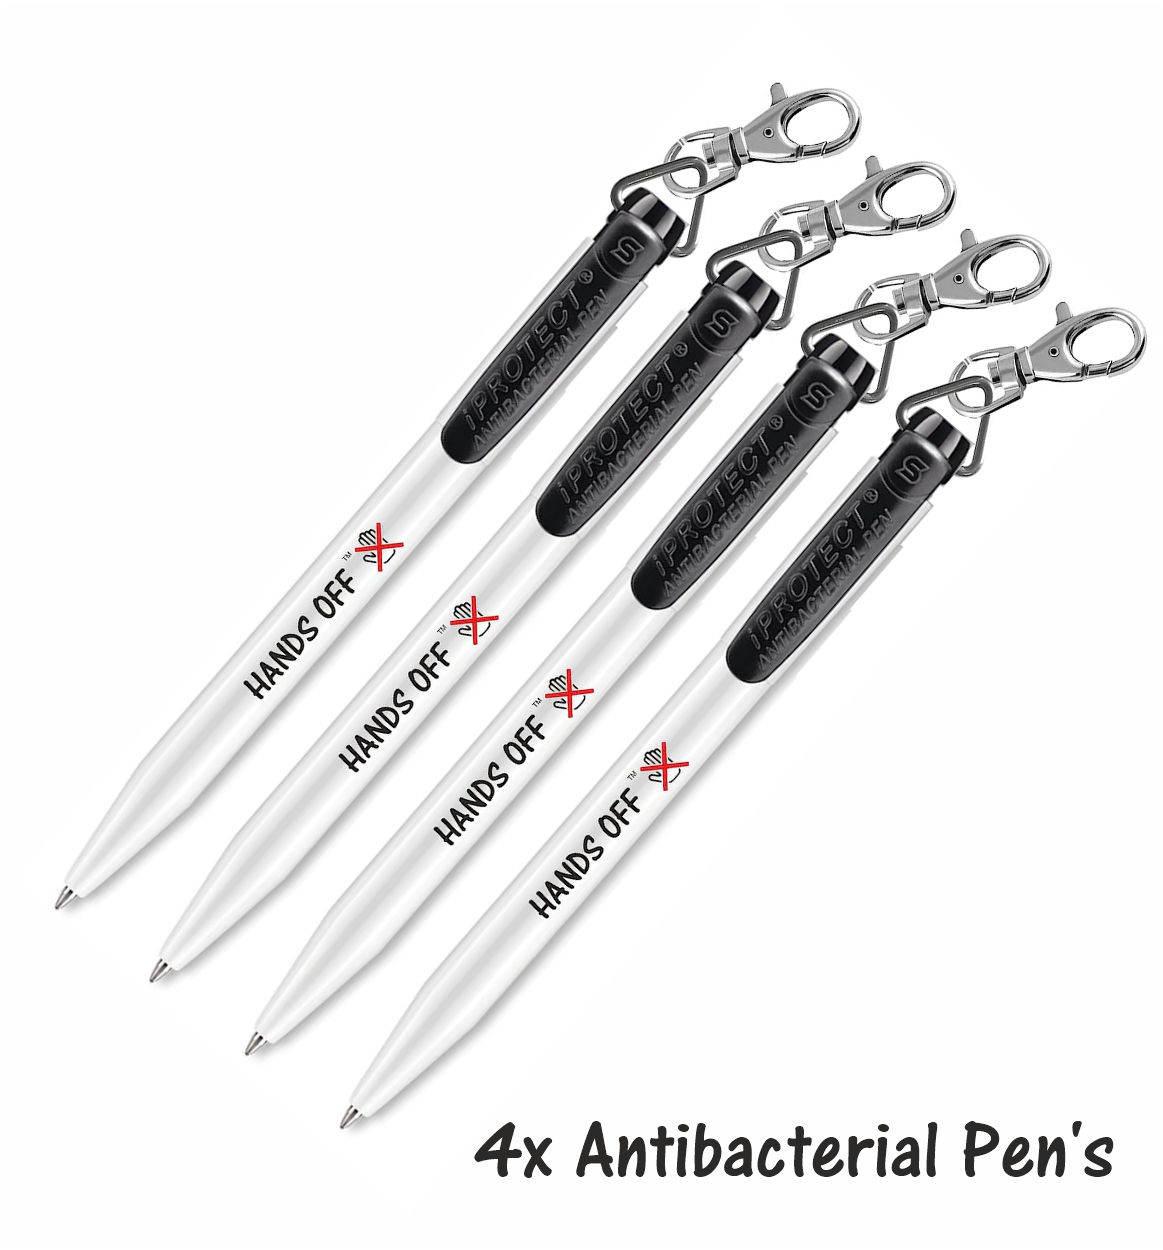 Hands off Antibacterial Pen's x 4 (Black clip)